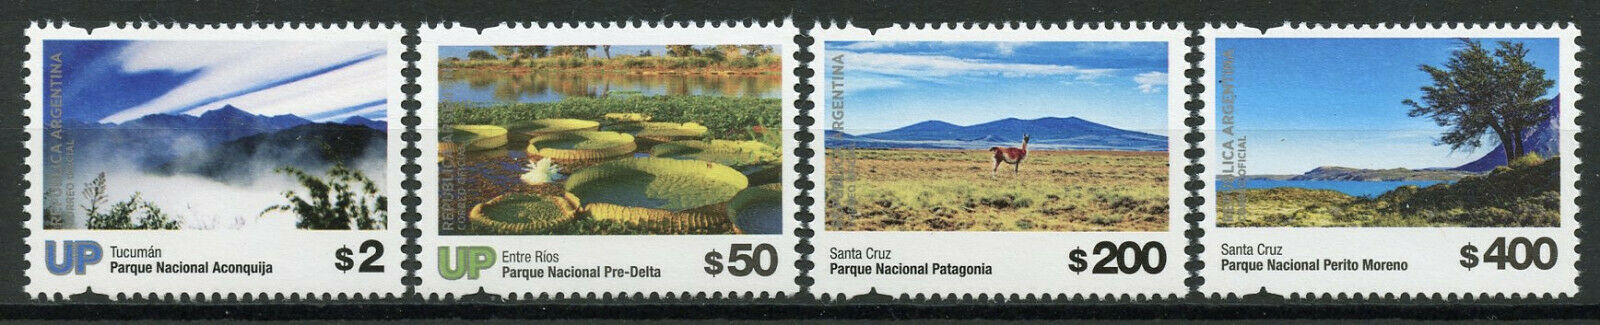 Argentina 2019 MNH National Parks Pt II 4v Set Nature Tourism Landscapes Stamps